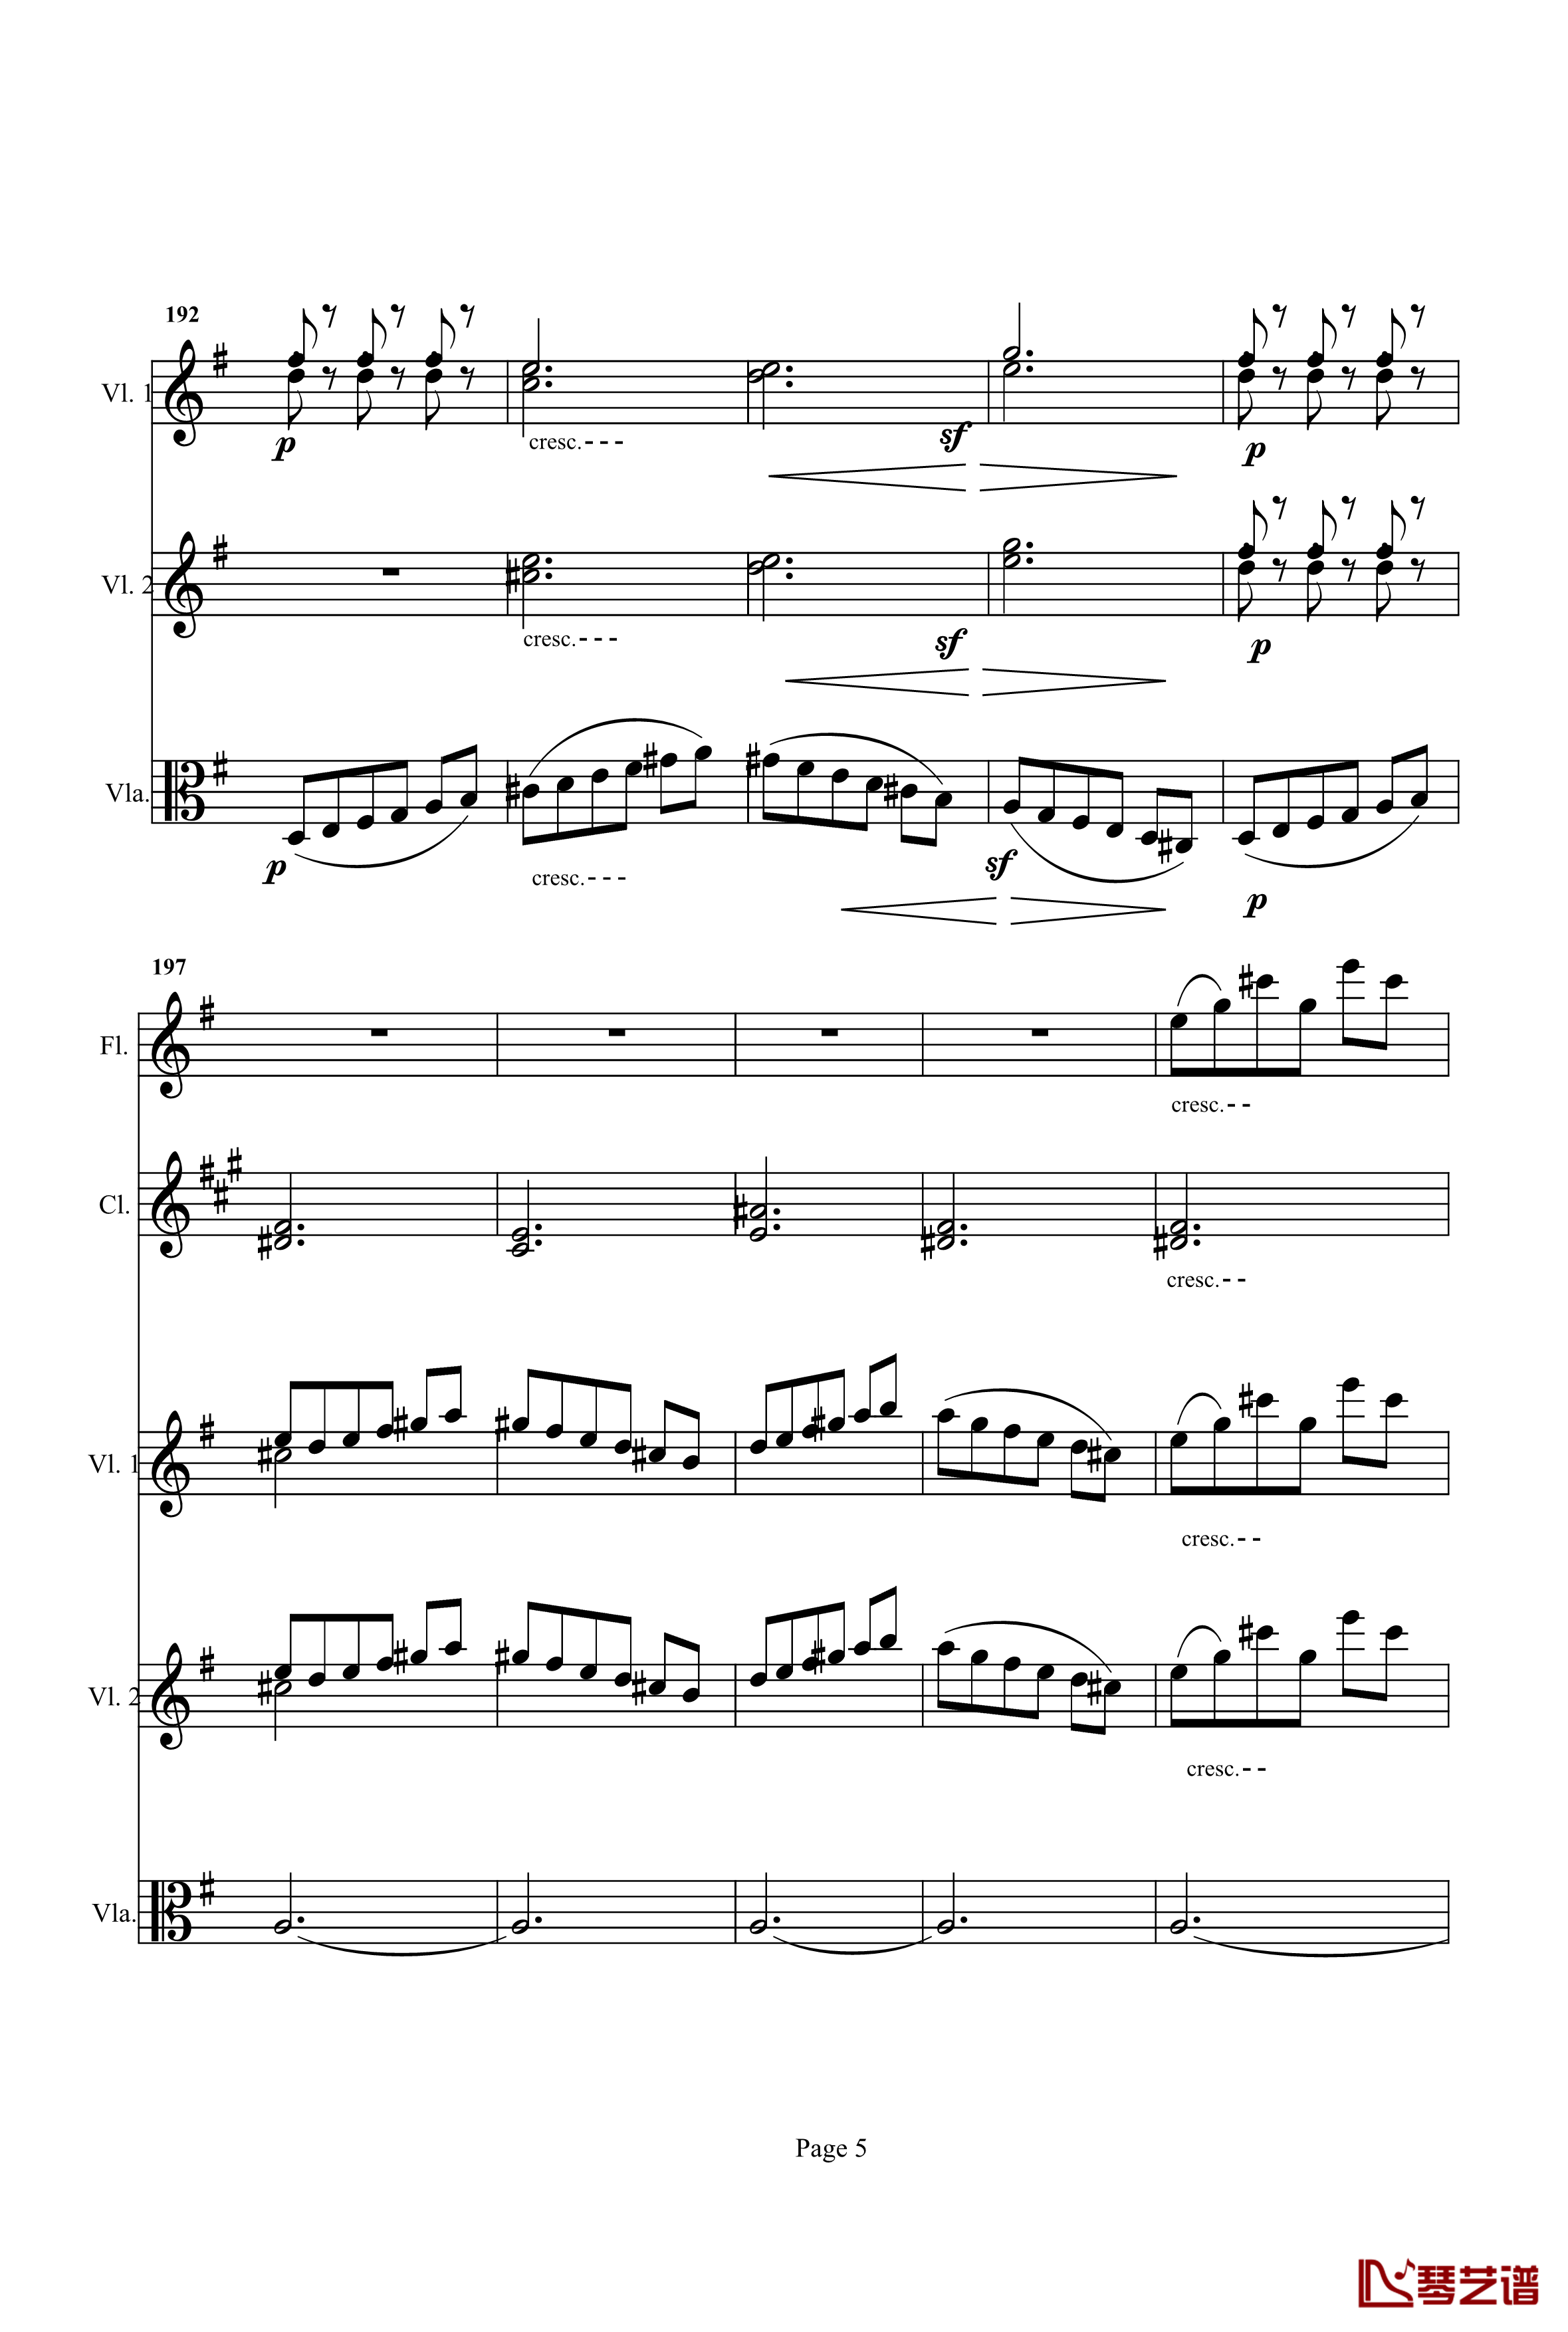 奏鸣曲之交响钢琴谱-第25首-Ⅰ-贝多芬-beethoven5